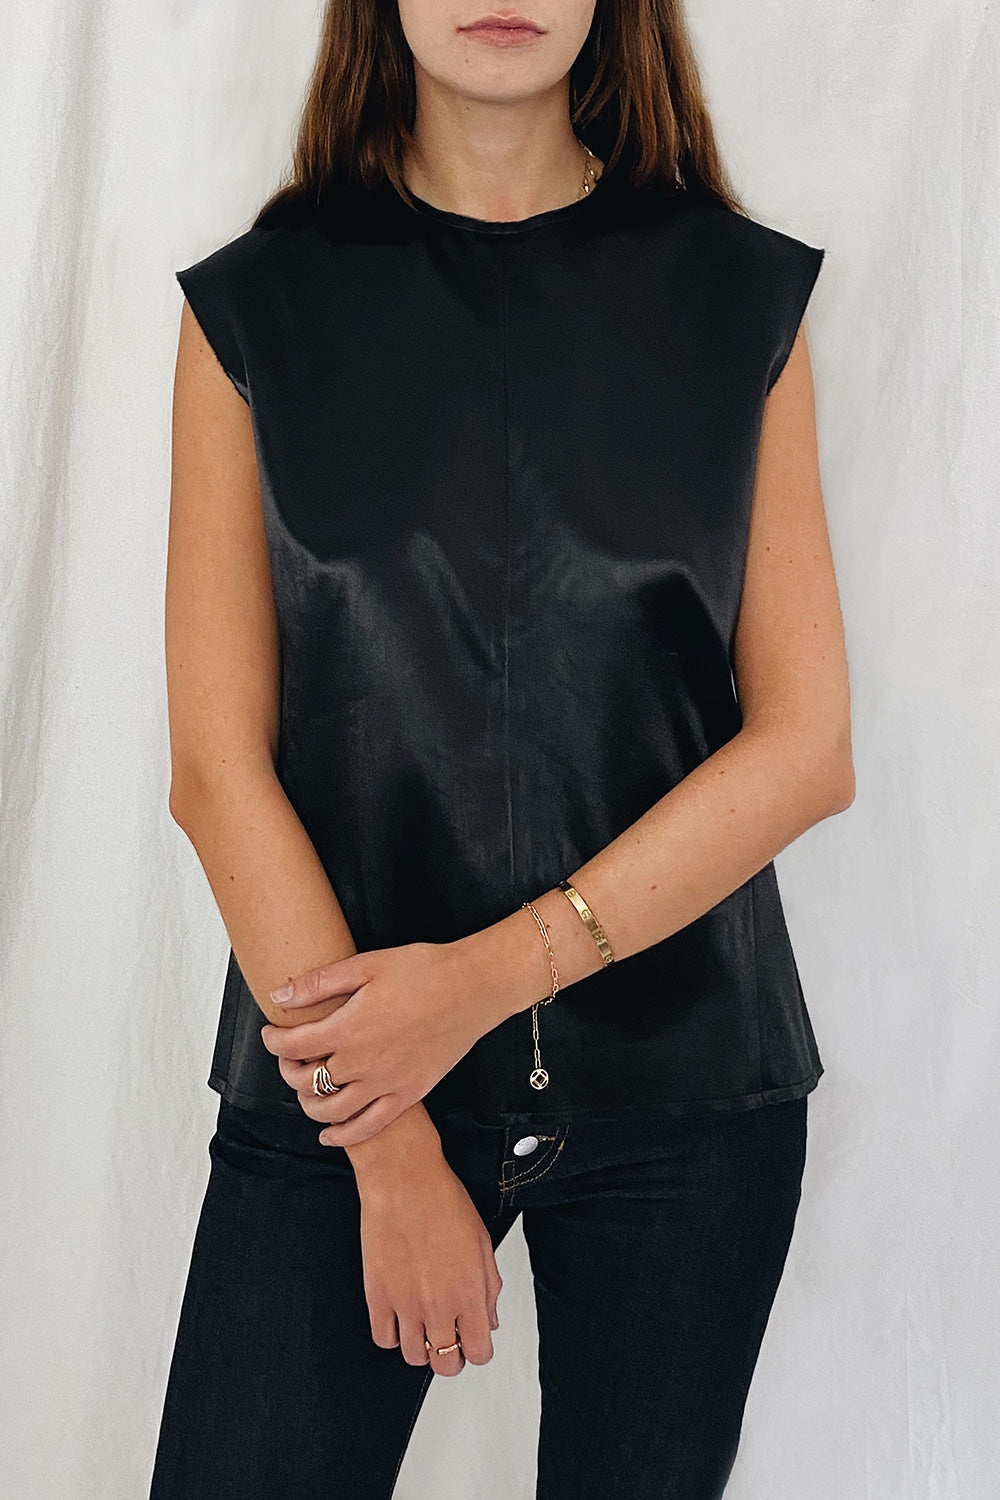 Celine Silky Sleeveless Vest Top Size 12